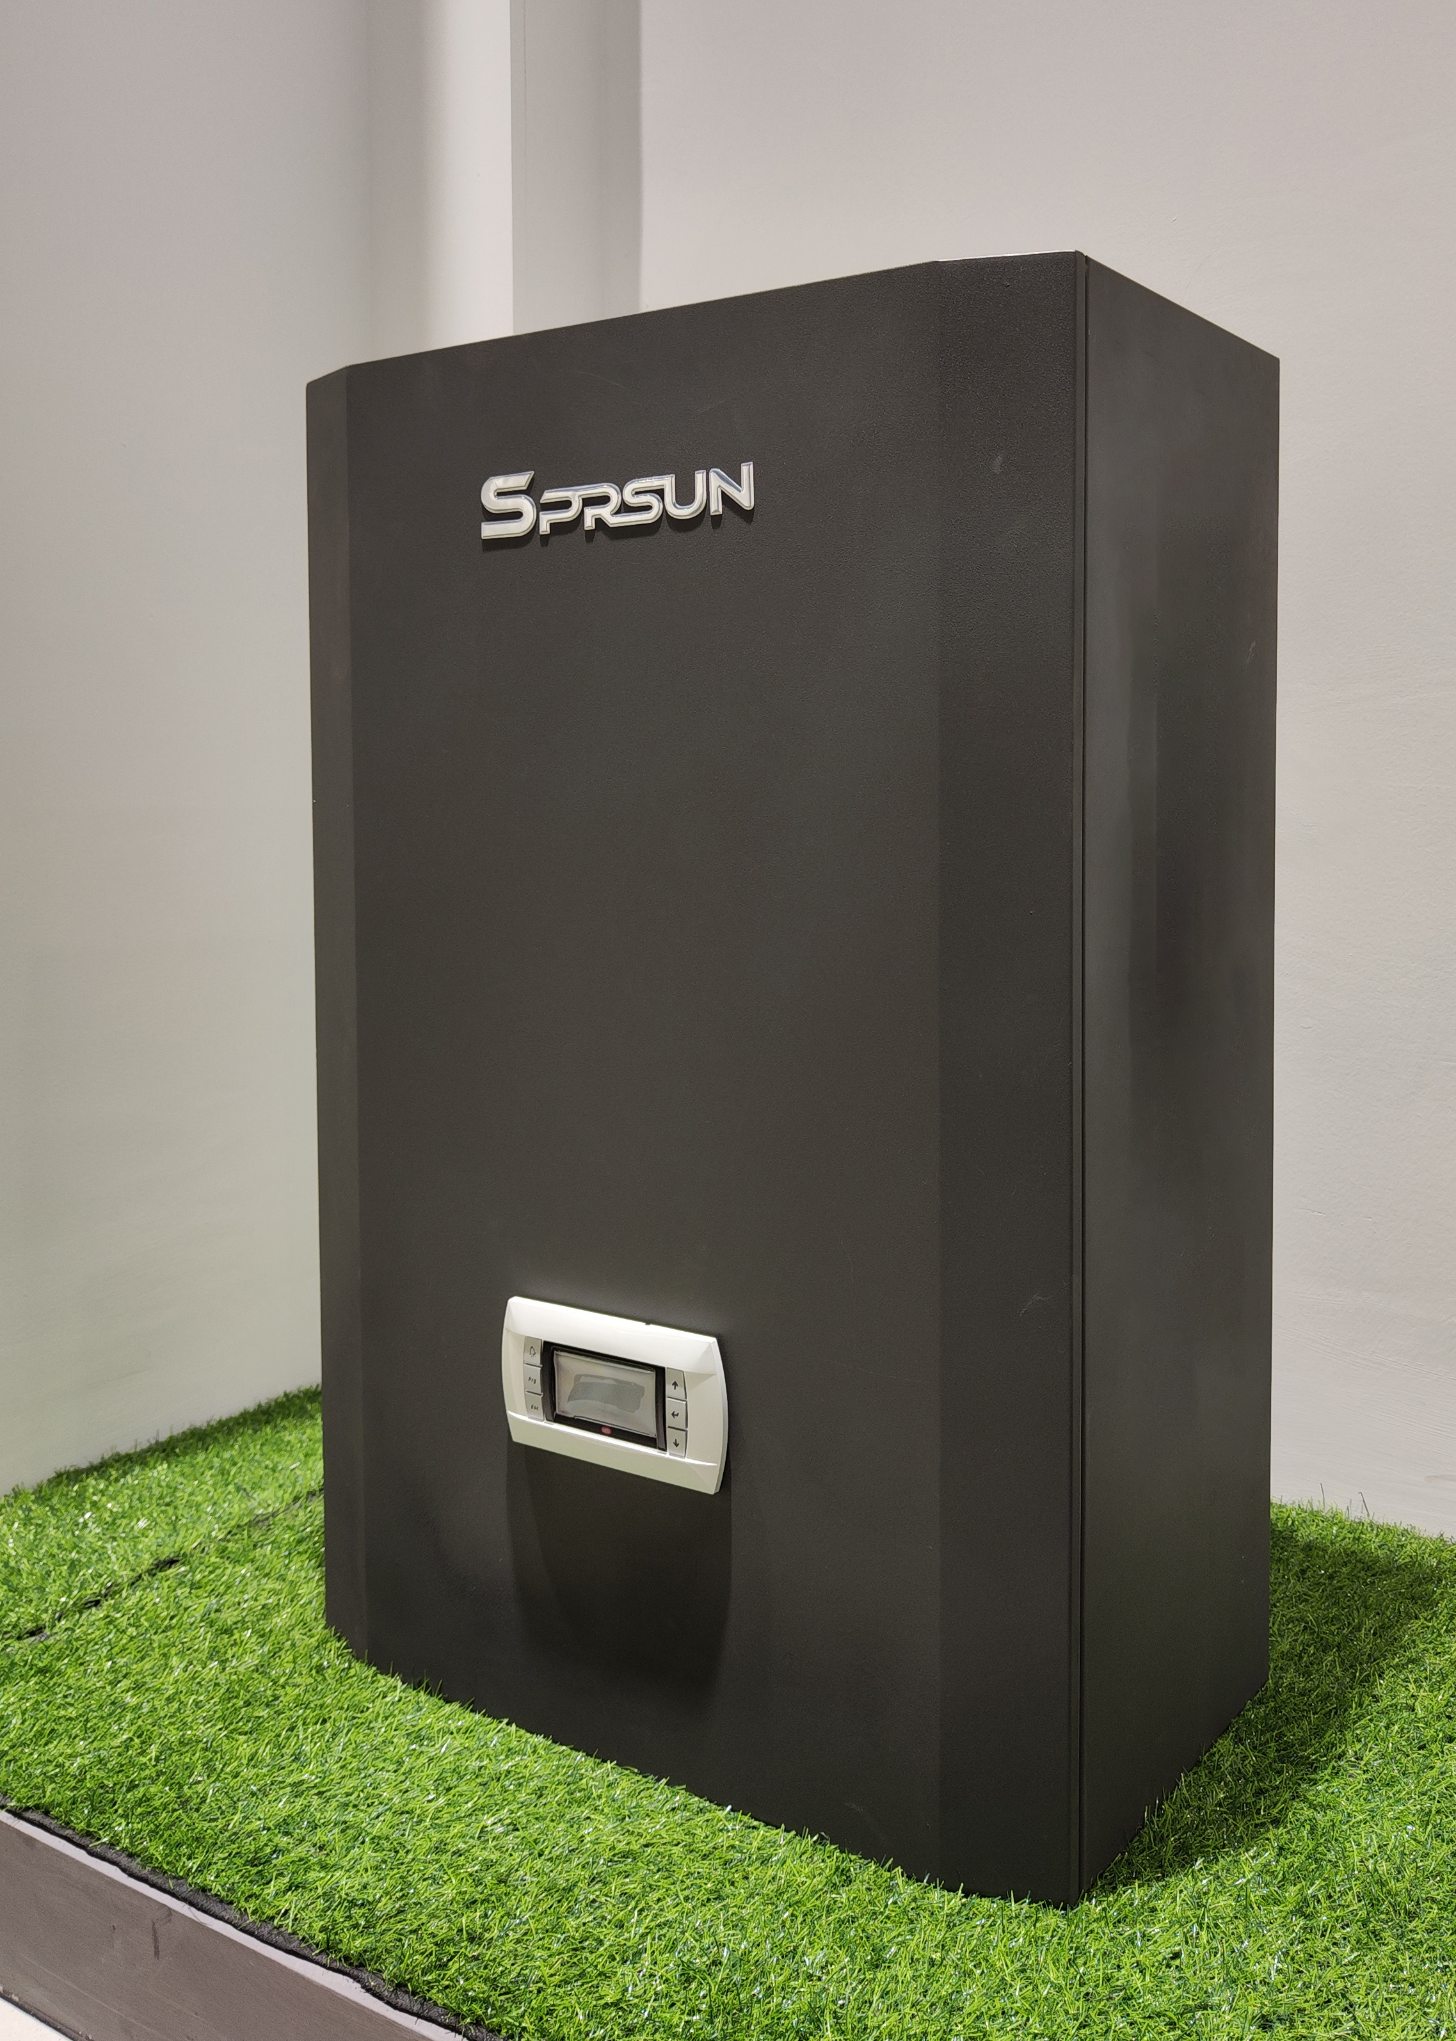 Zwarte SPRSUN warmtepompkit voor eenvoudige installatie